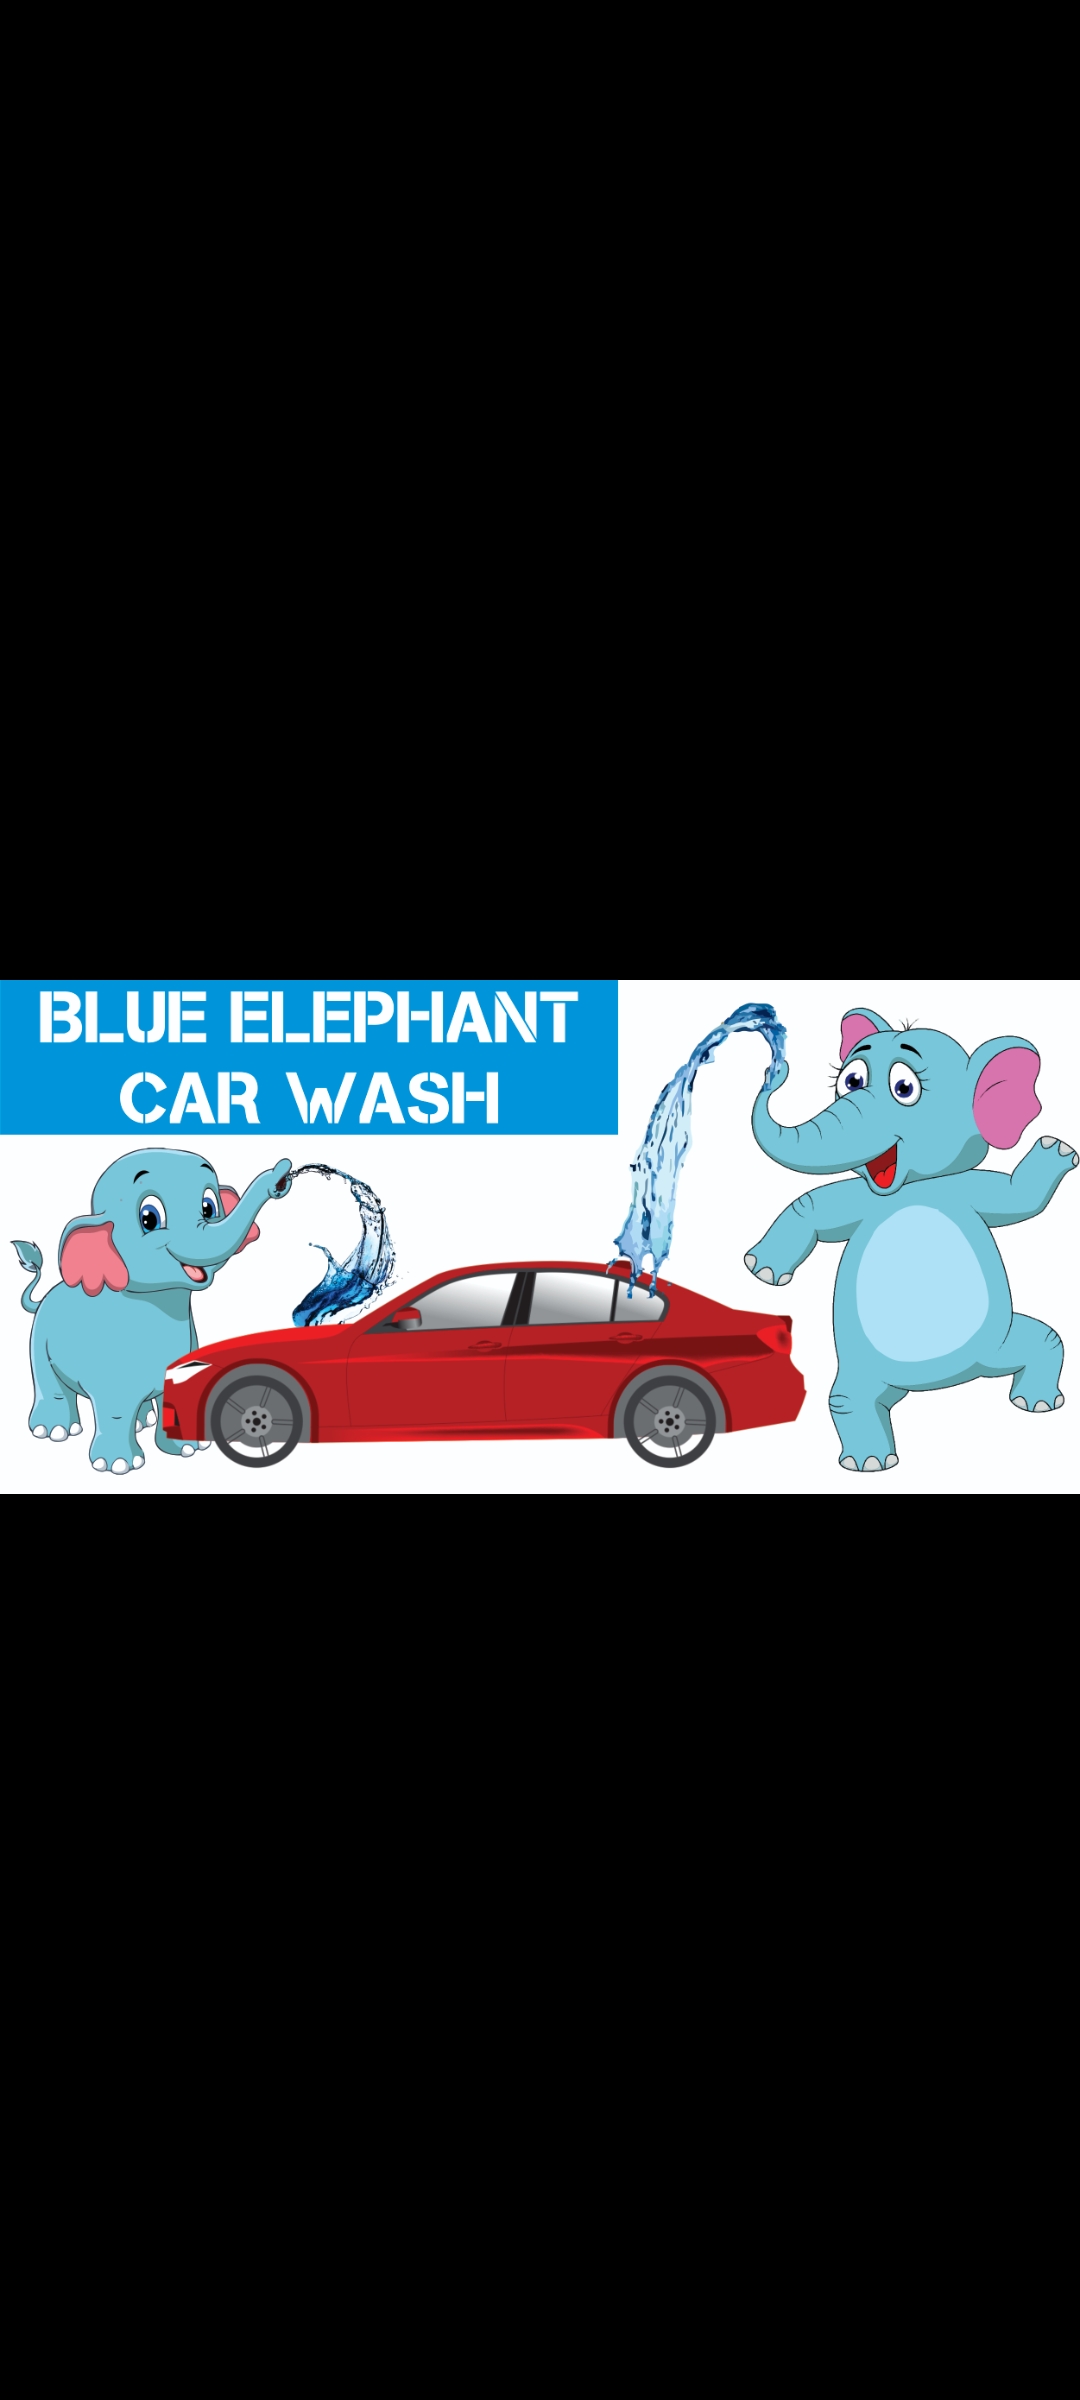 BLUE ELEPHANT CARWASH